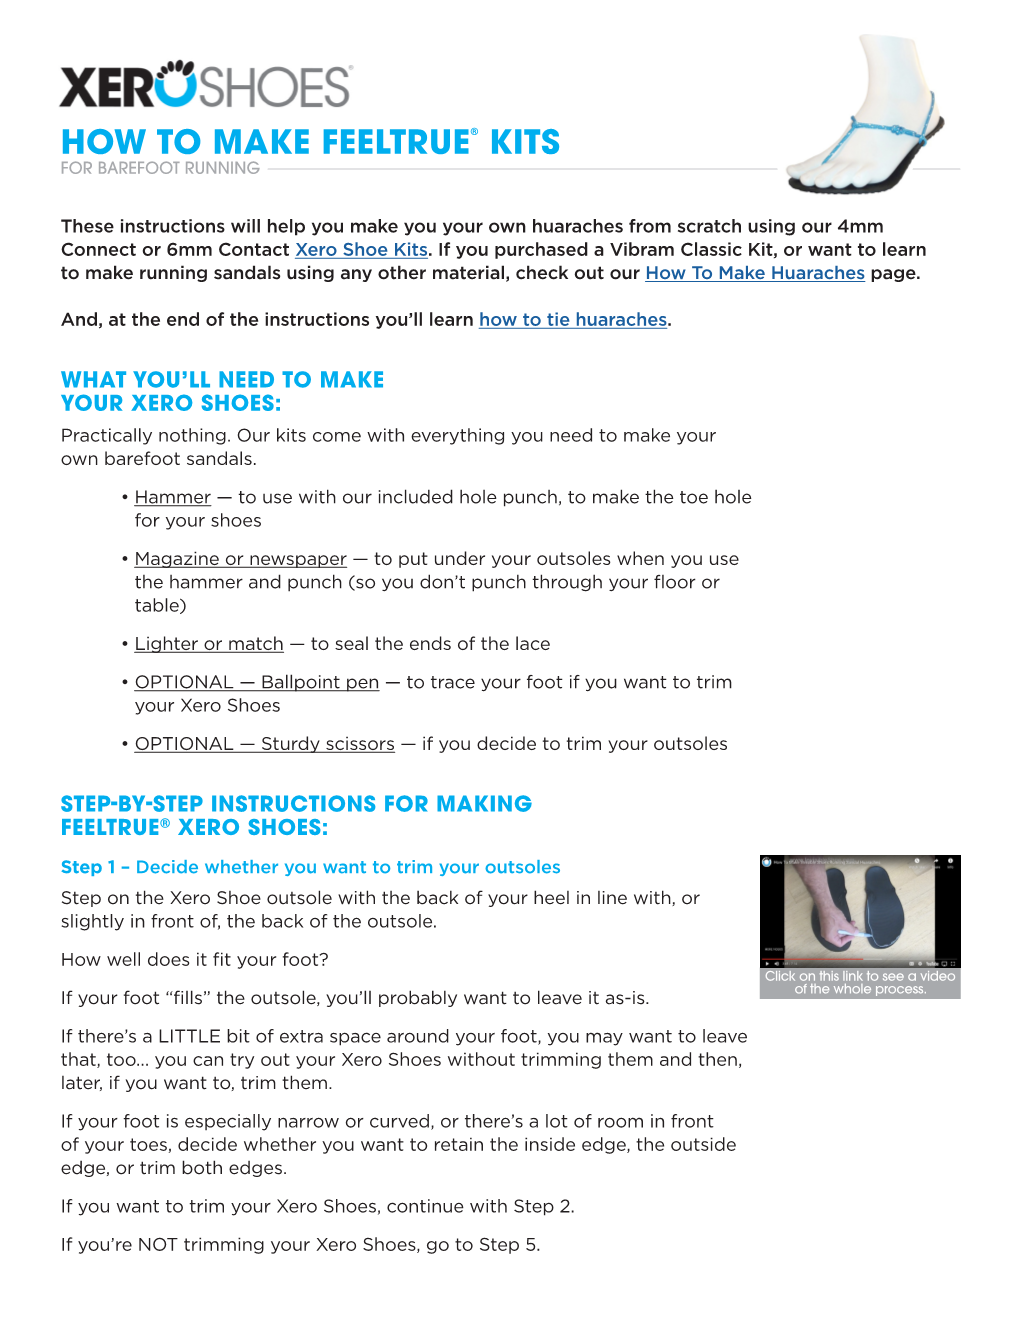 How to Make Feeltrue® Kits for Barefoot Running